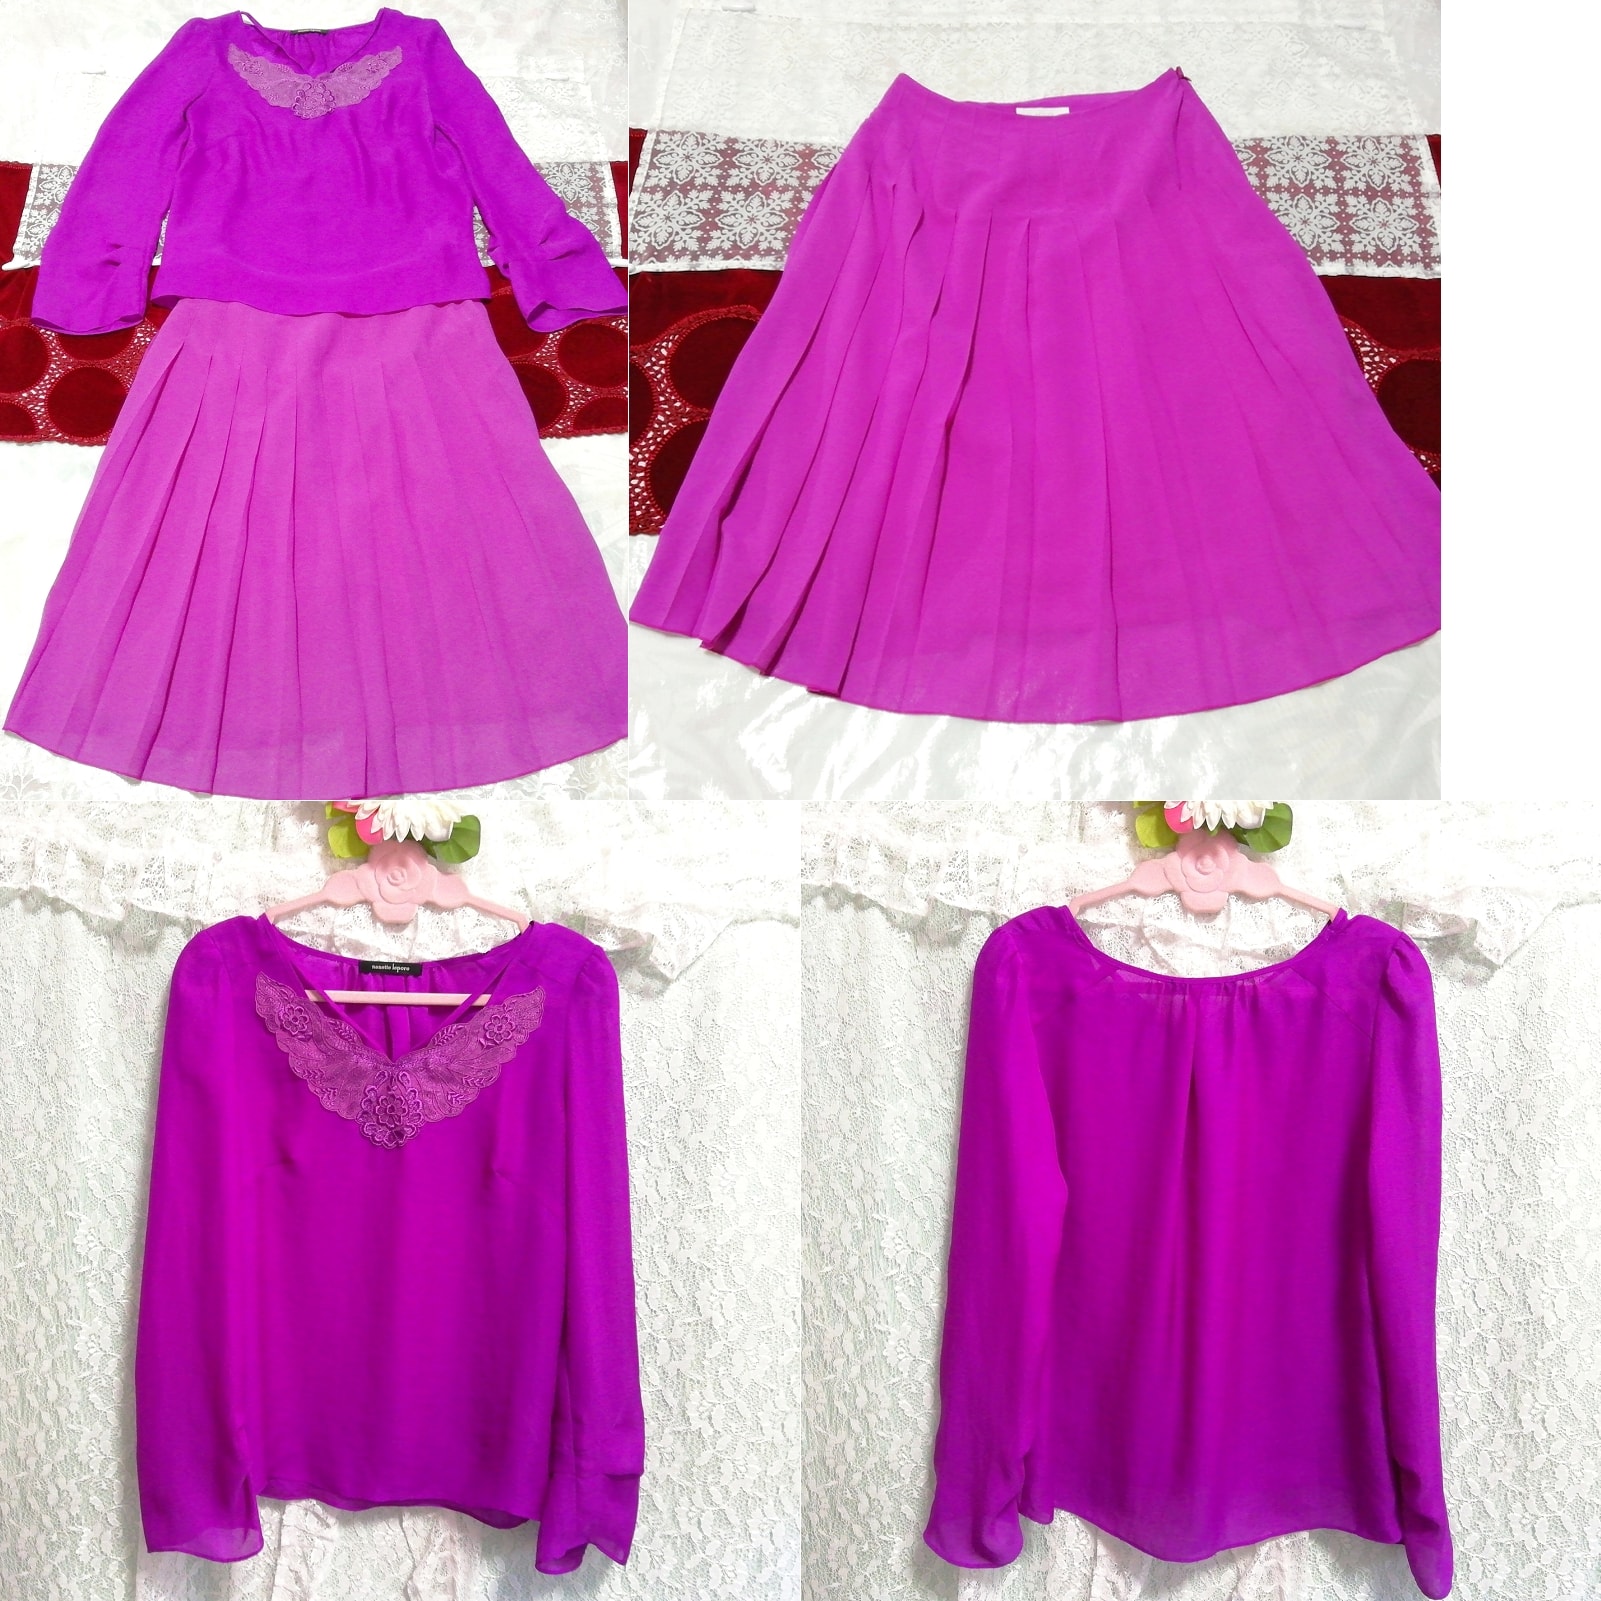 Tunique en mousseline de soie violette, chemise de nuit déshabillée, jupe en mousseline de soie 2P, mode, mode féminine, vêtement de nuit, pyjamas